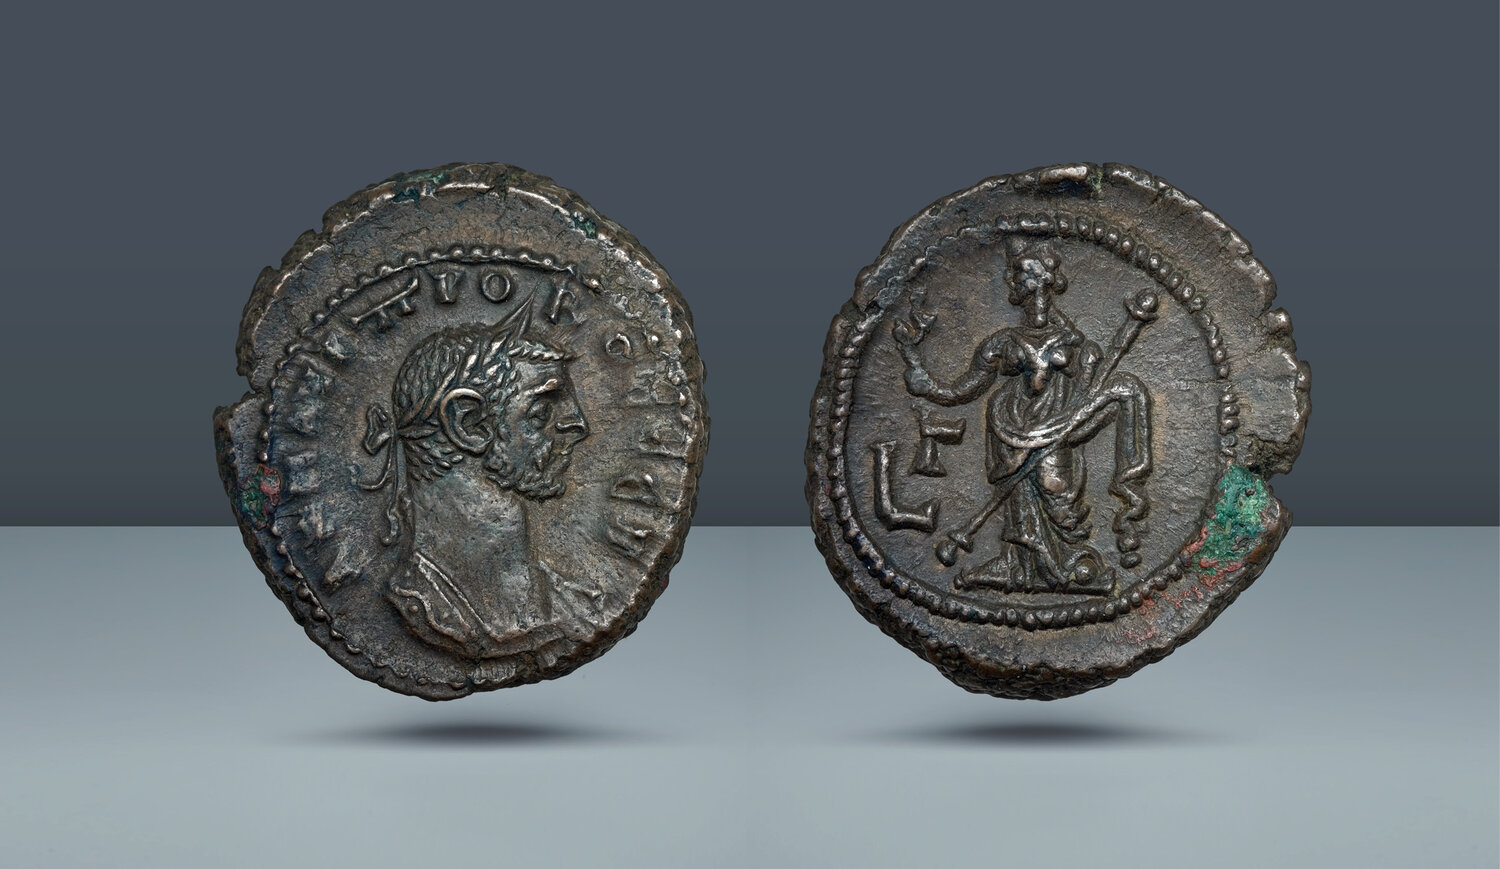 Probus, 276-282 AD, Silvered Antoninianus, Fides Militum, struck